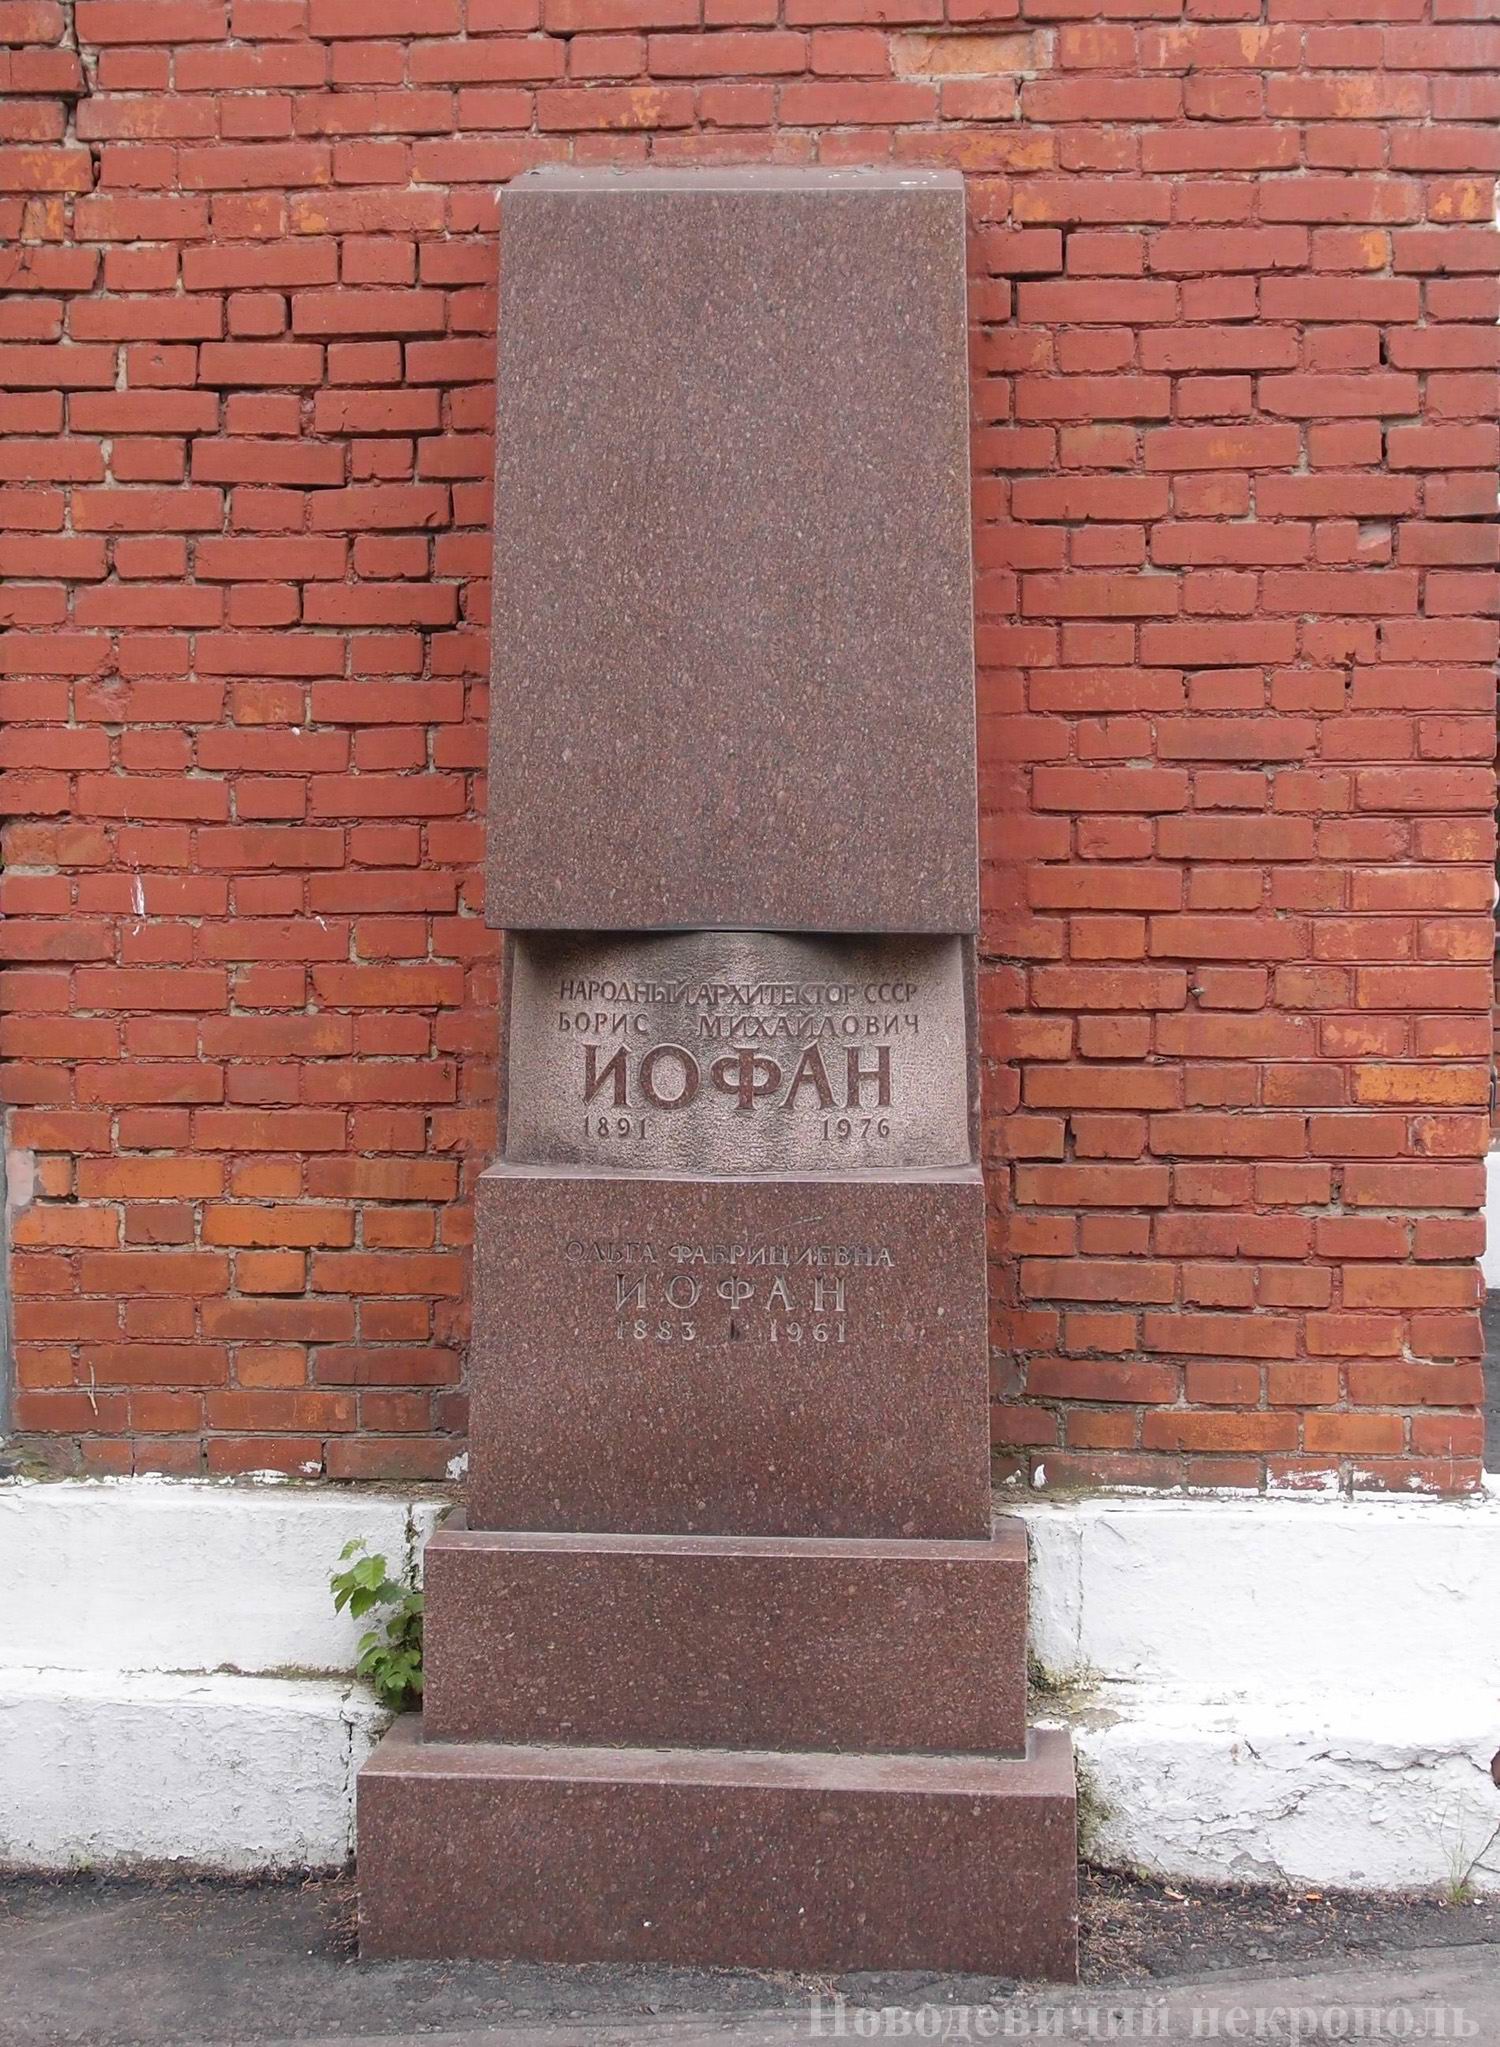 Памятник на нише Иофана Б.М. (1891–1976), на Новодевичьем кладбище ([134–135]). Нажмите левую кнопку мыши, чтобы увидеть другой вариант.